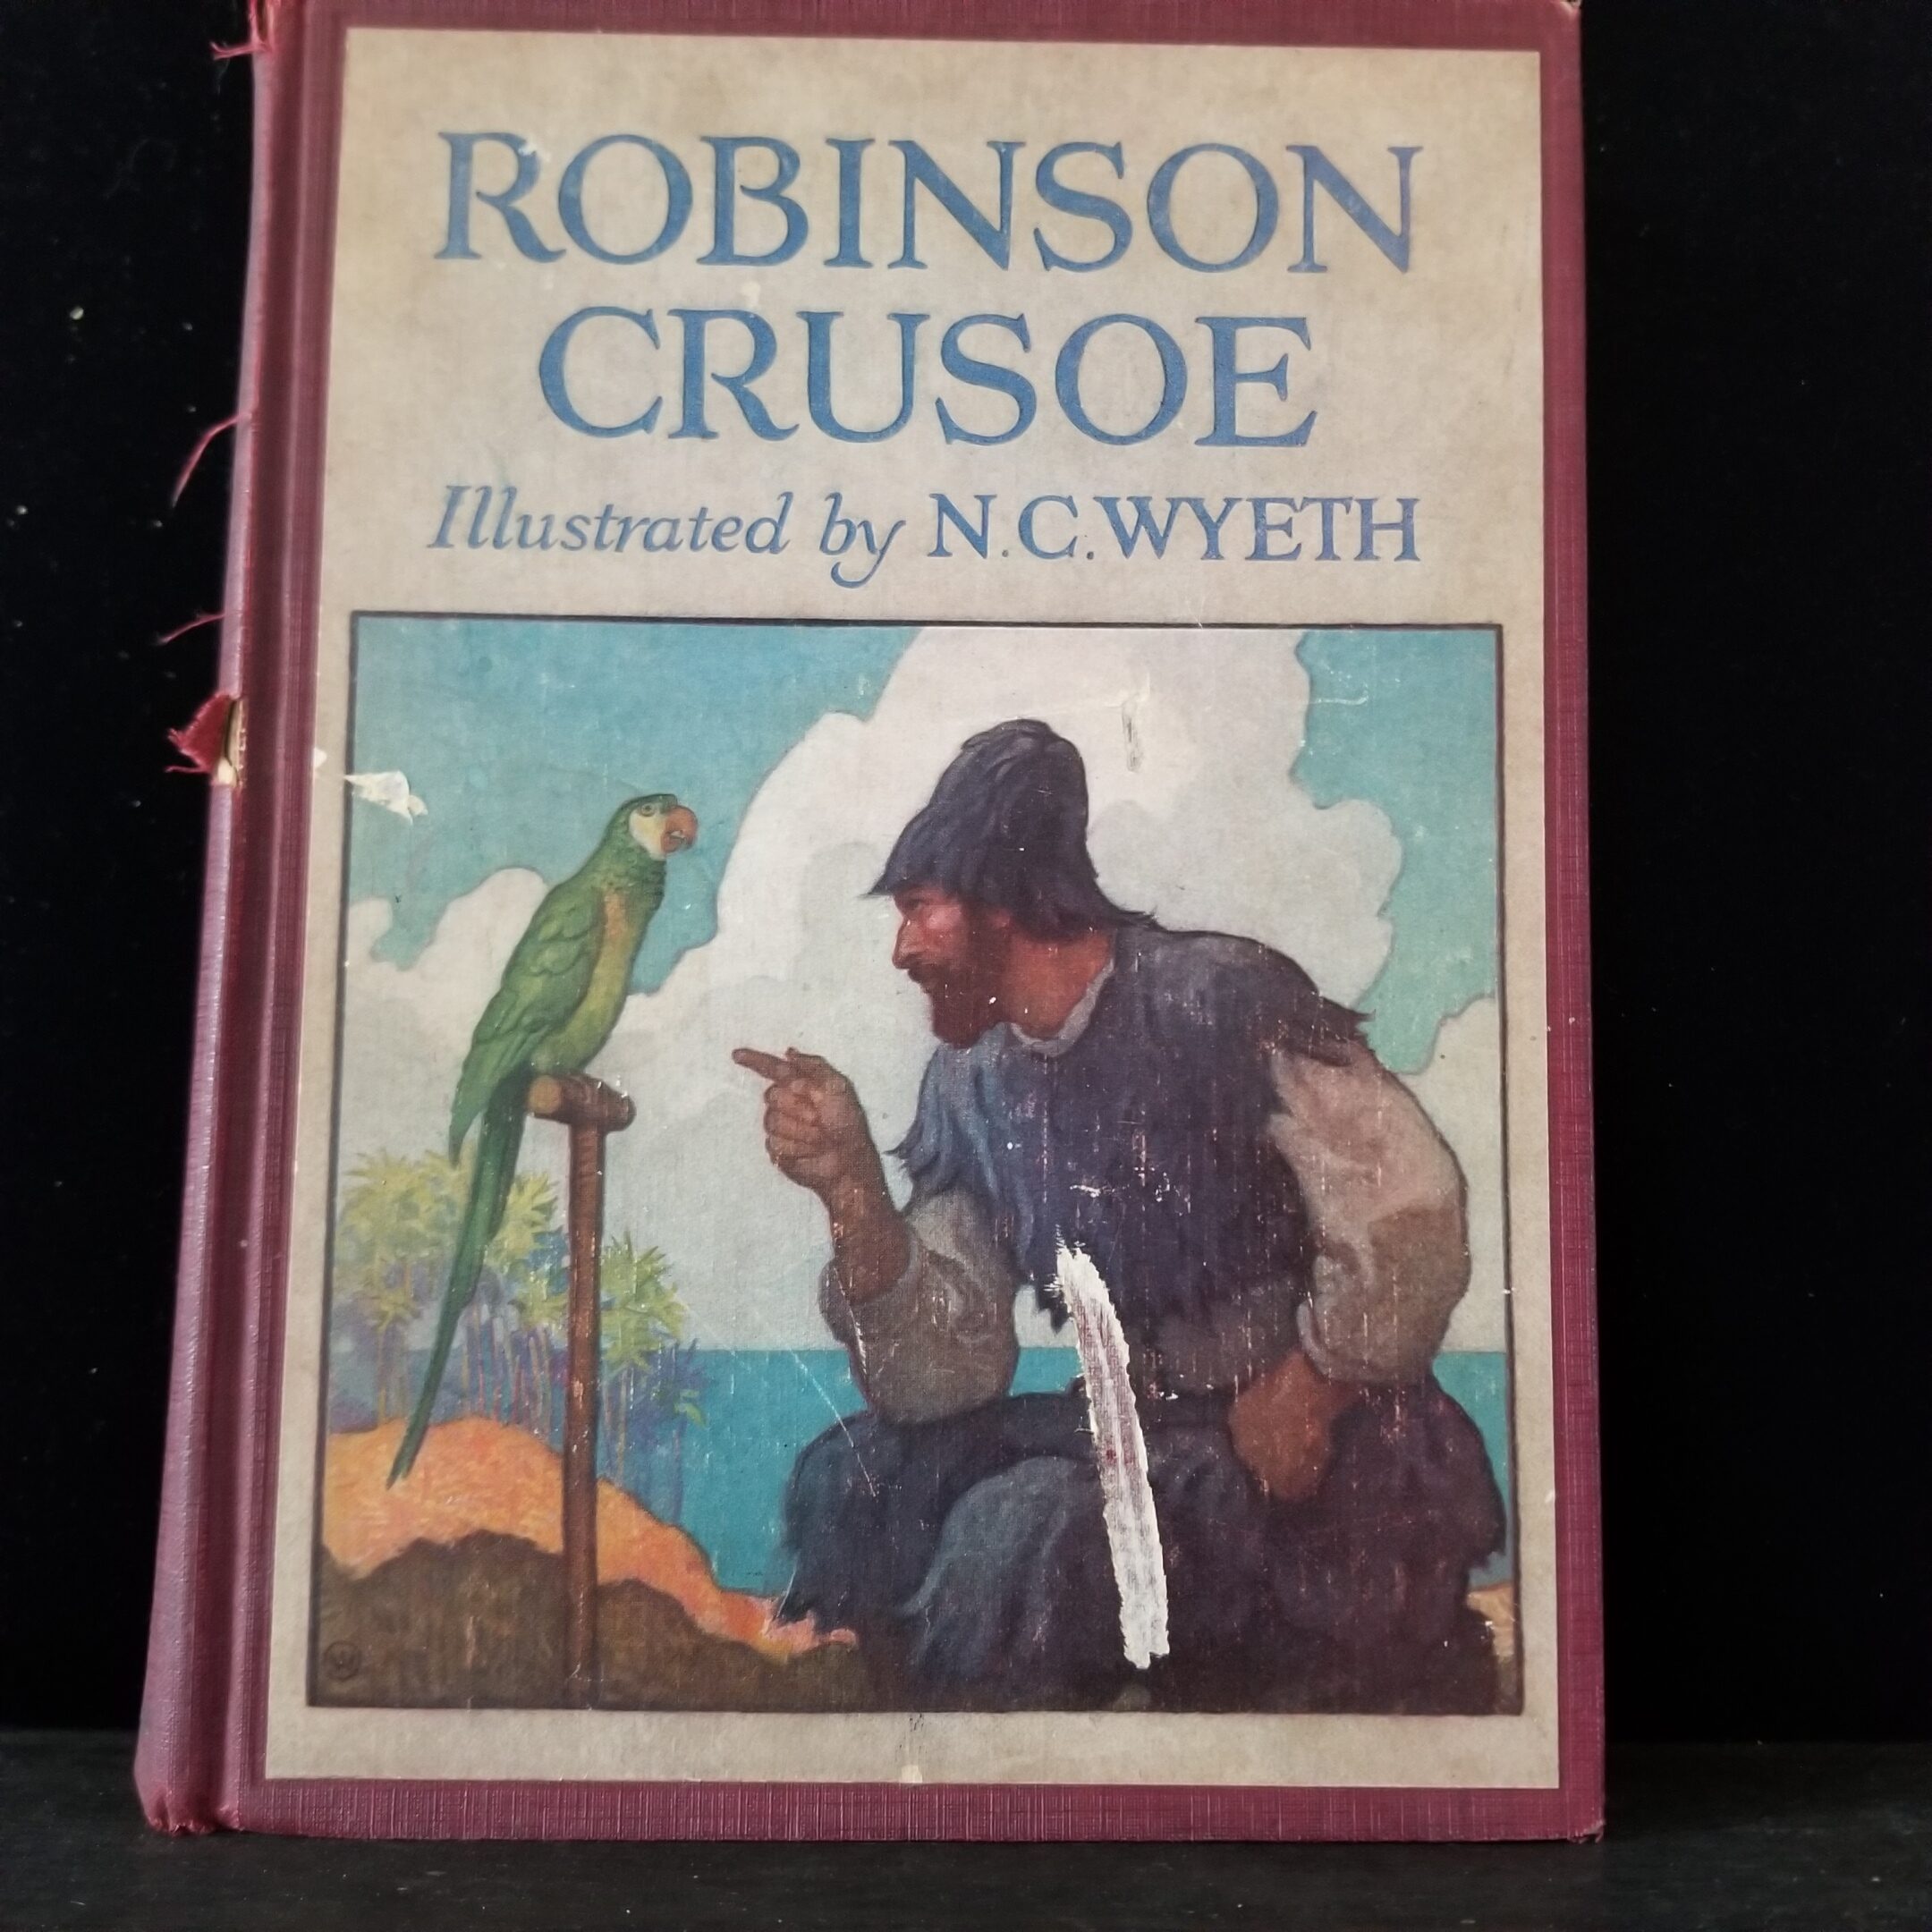 Robinson Crusoe cover image by N.C. Wyeth